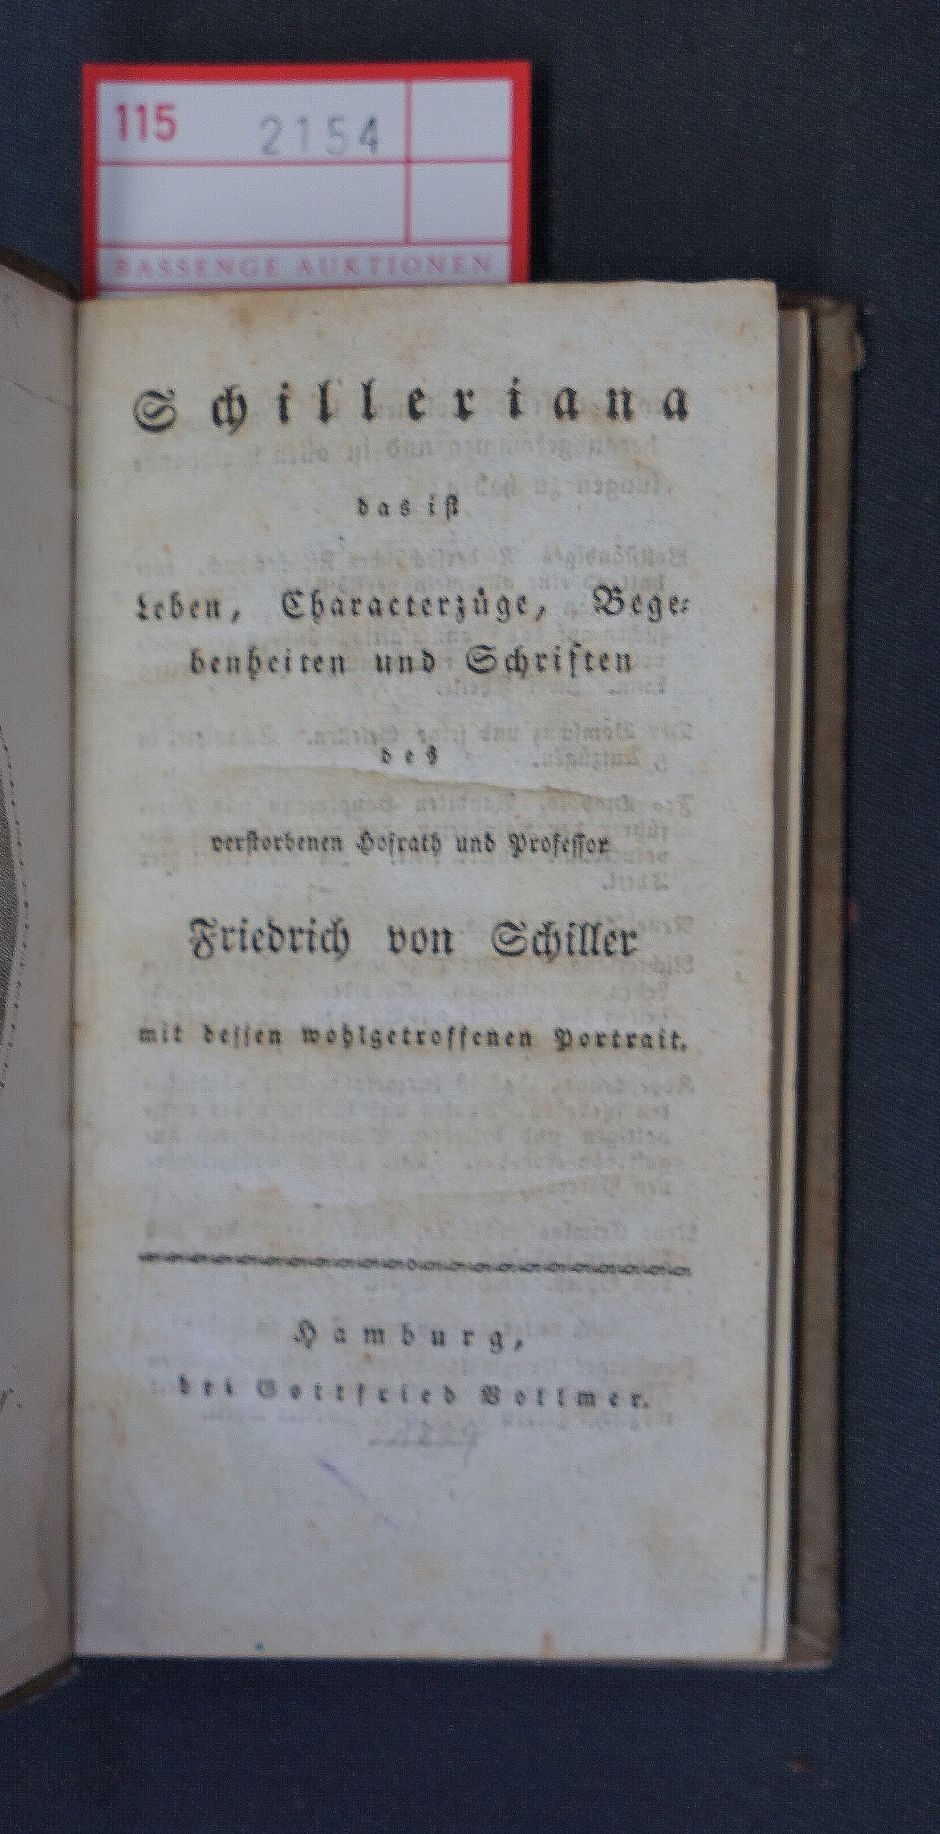 Lot 2154, Auction  115, Schilleriana und , Friedrich von Schiller